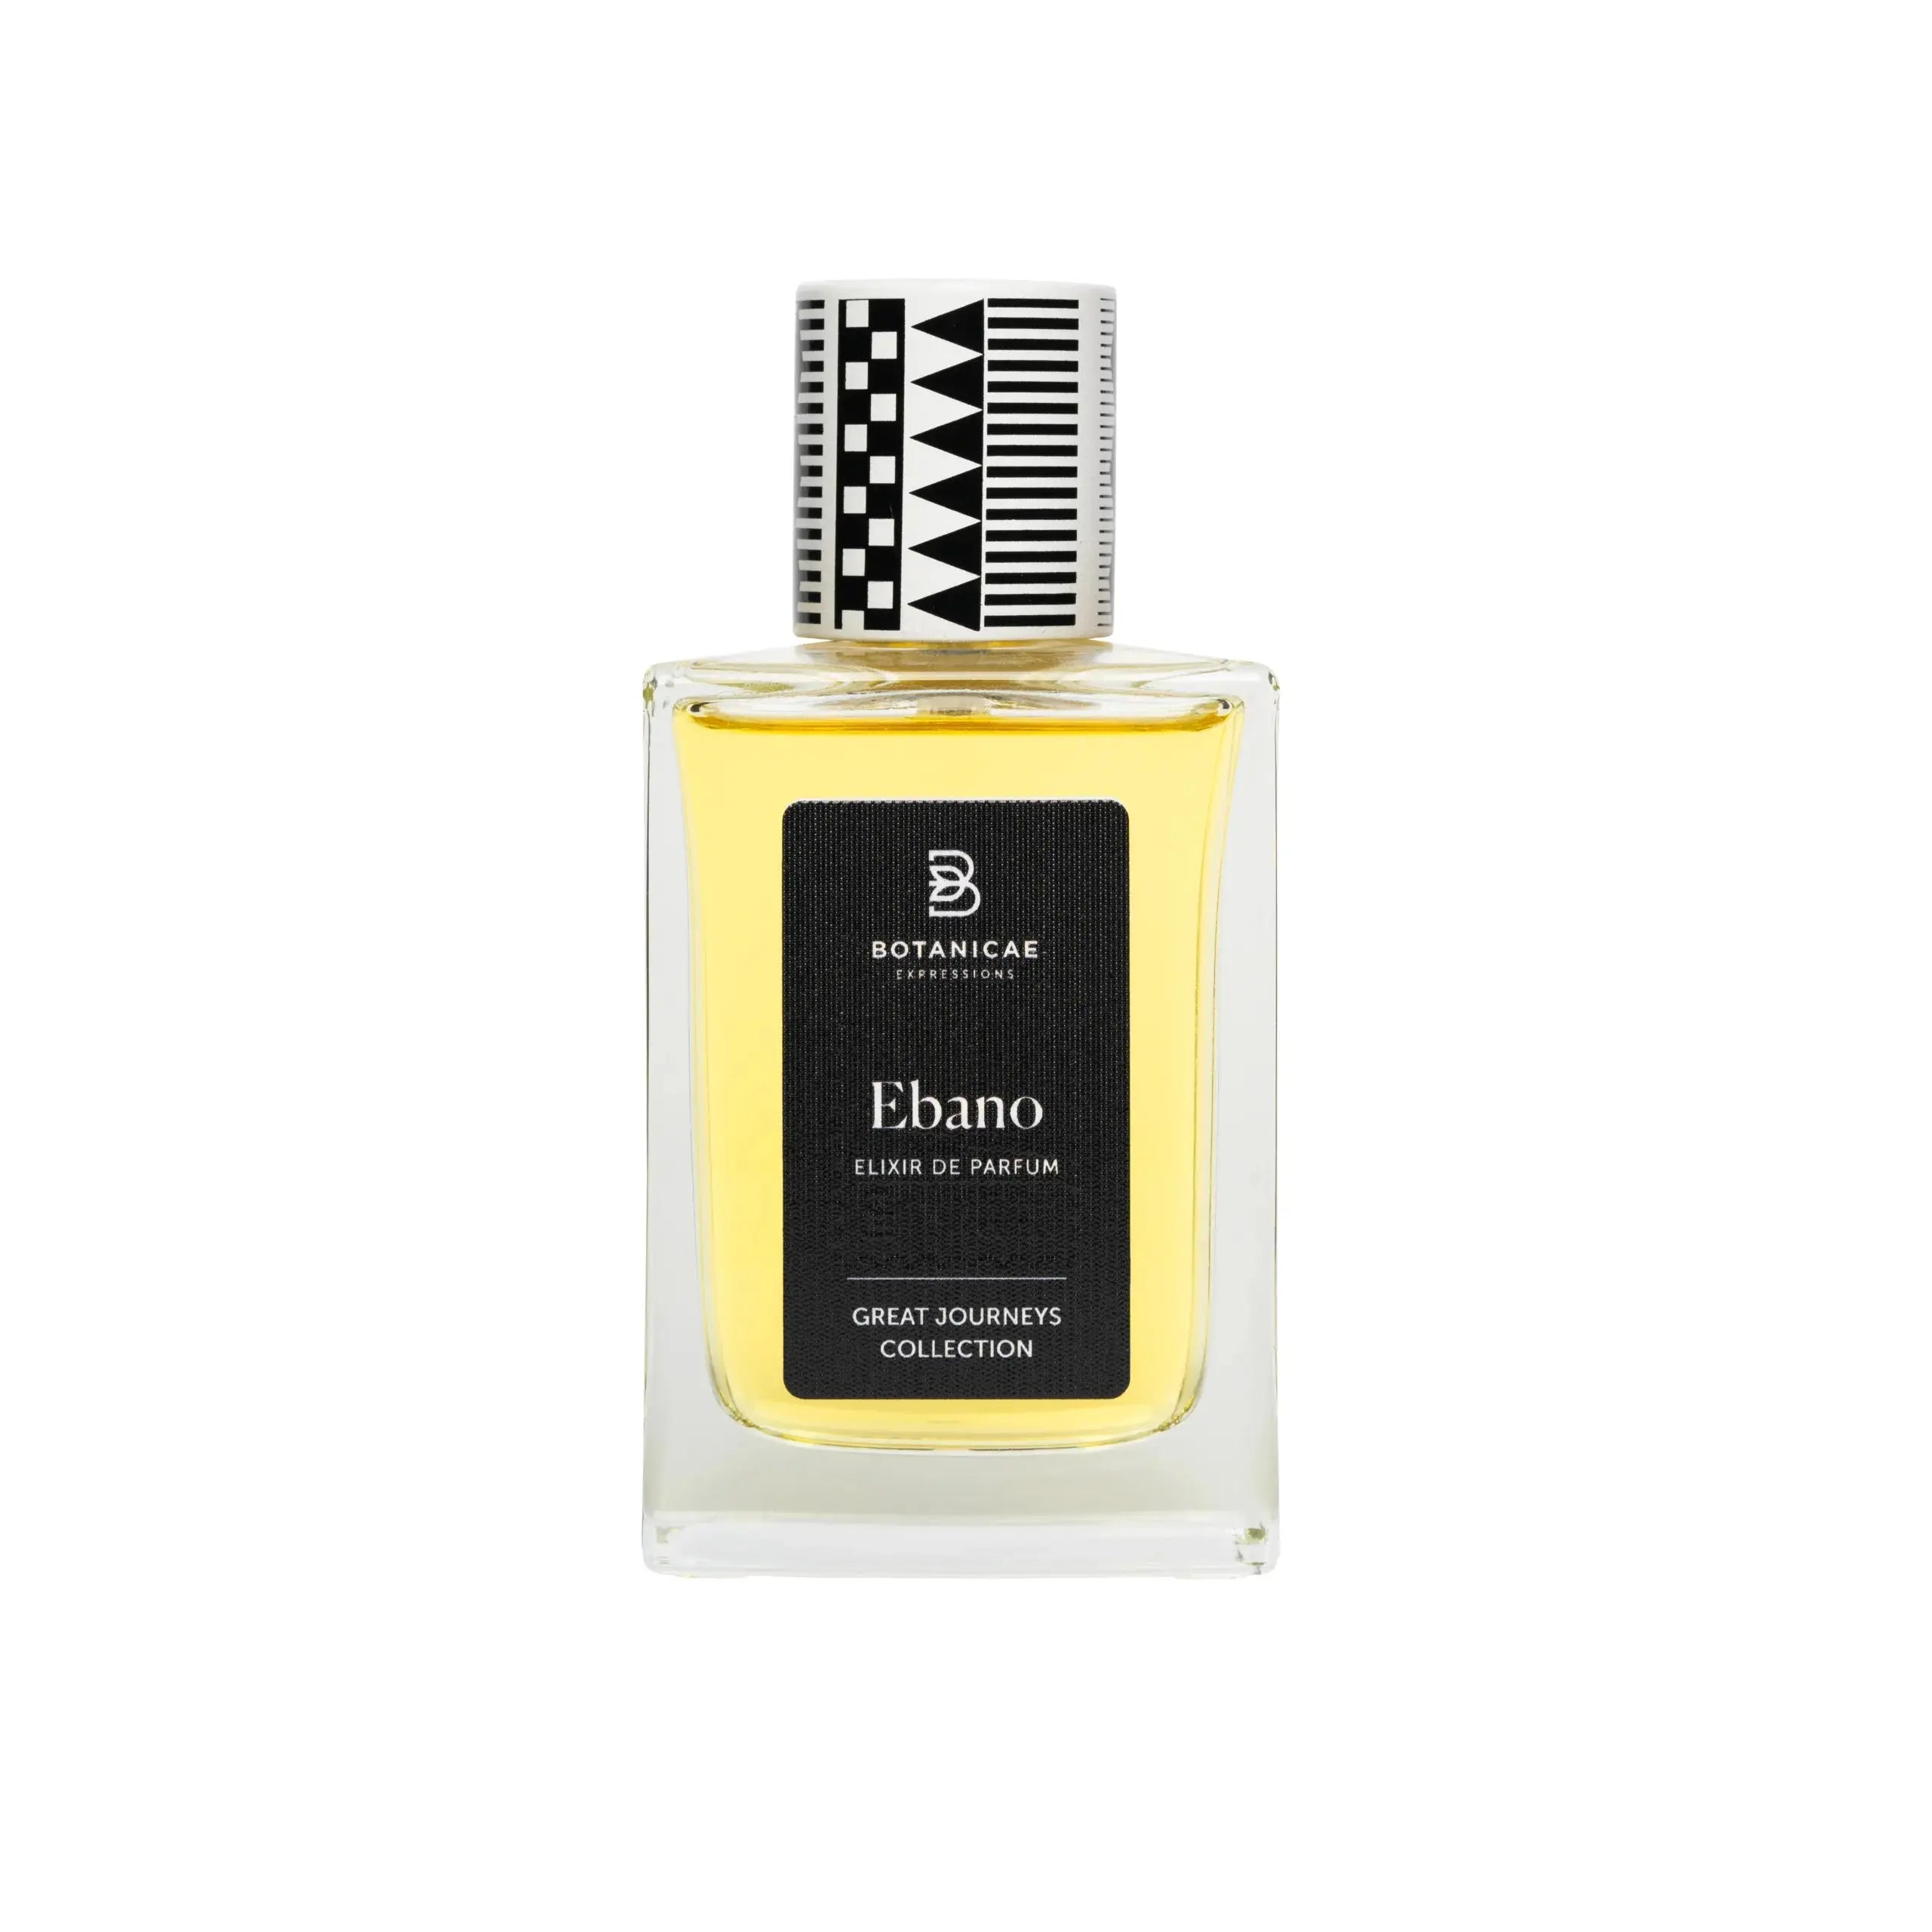 Ébano Elixir de perfume Botanicae - 75 ml